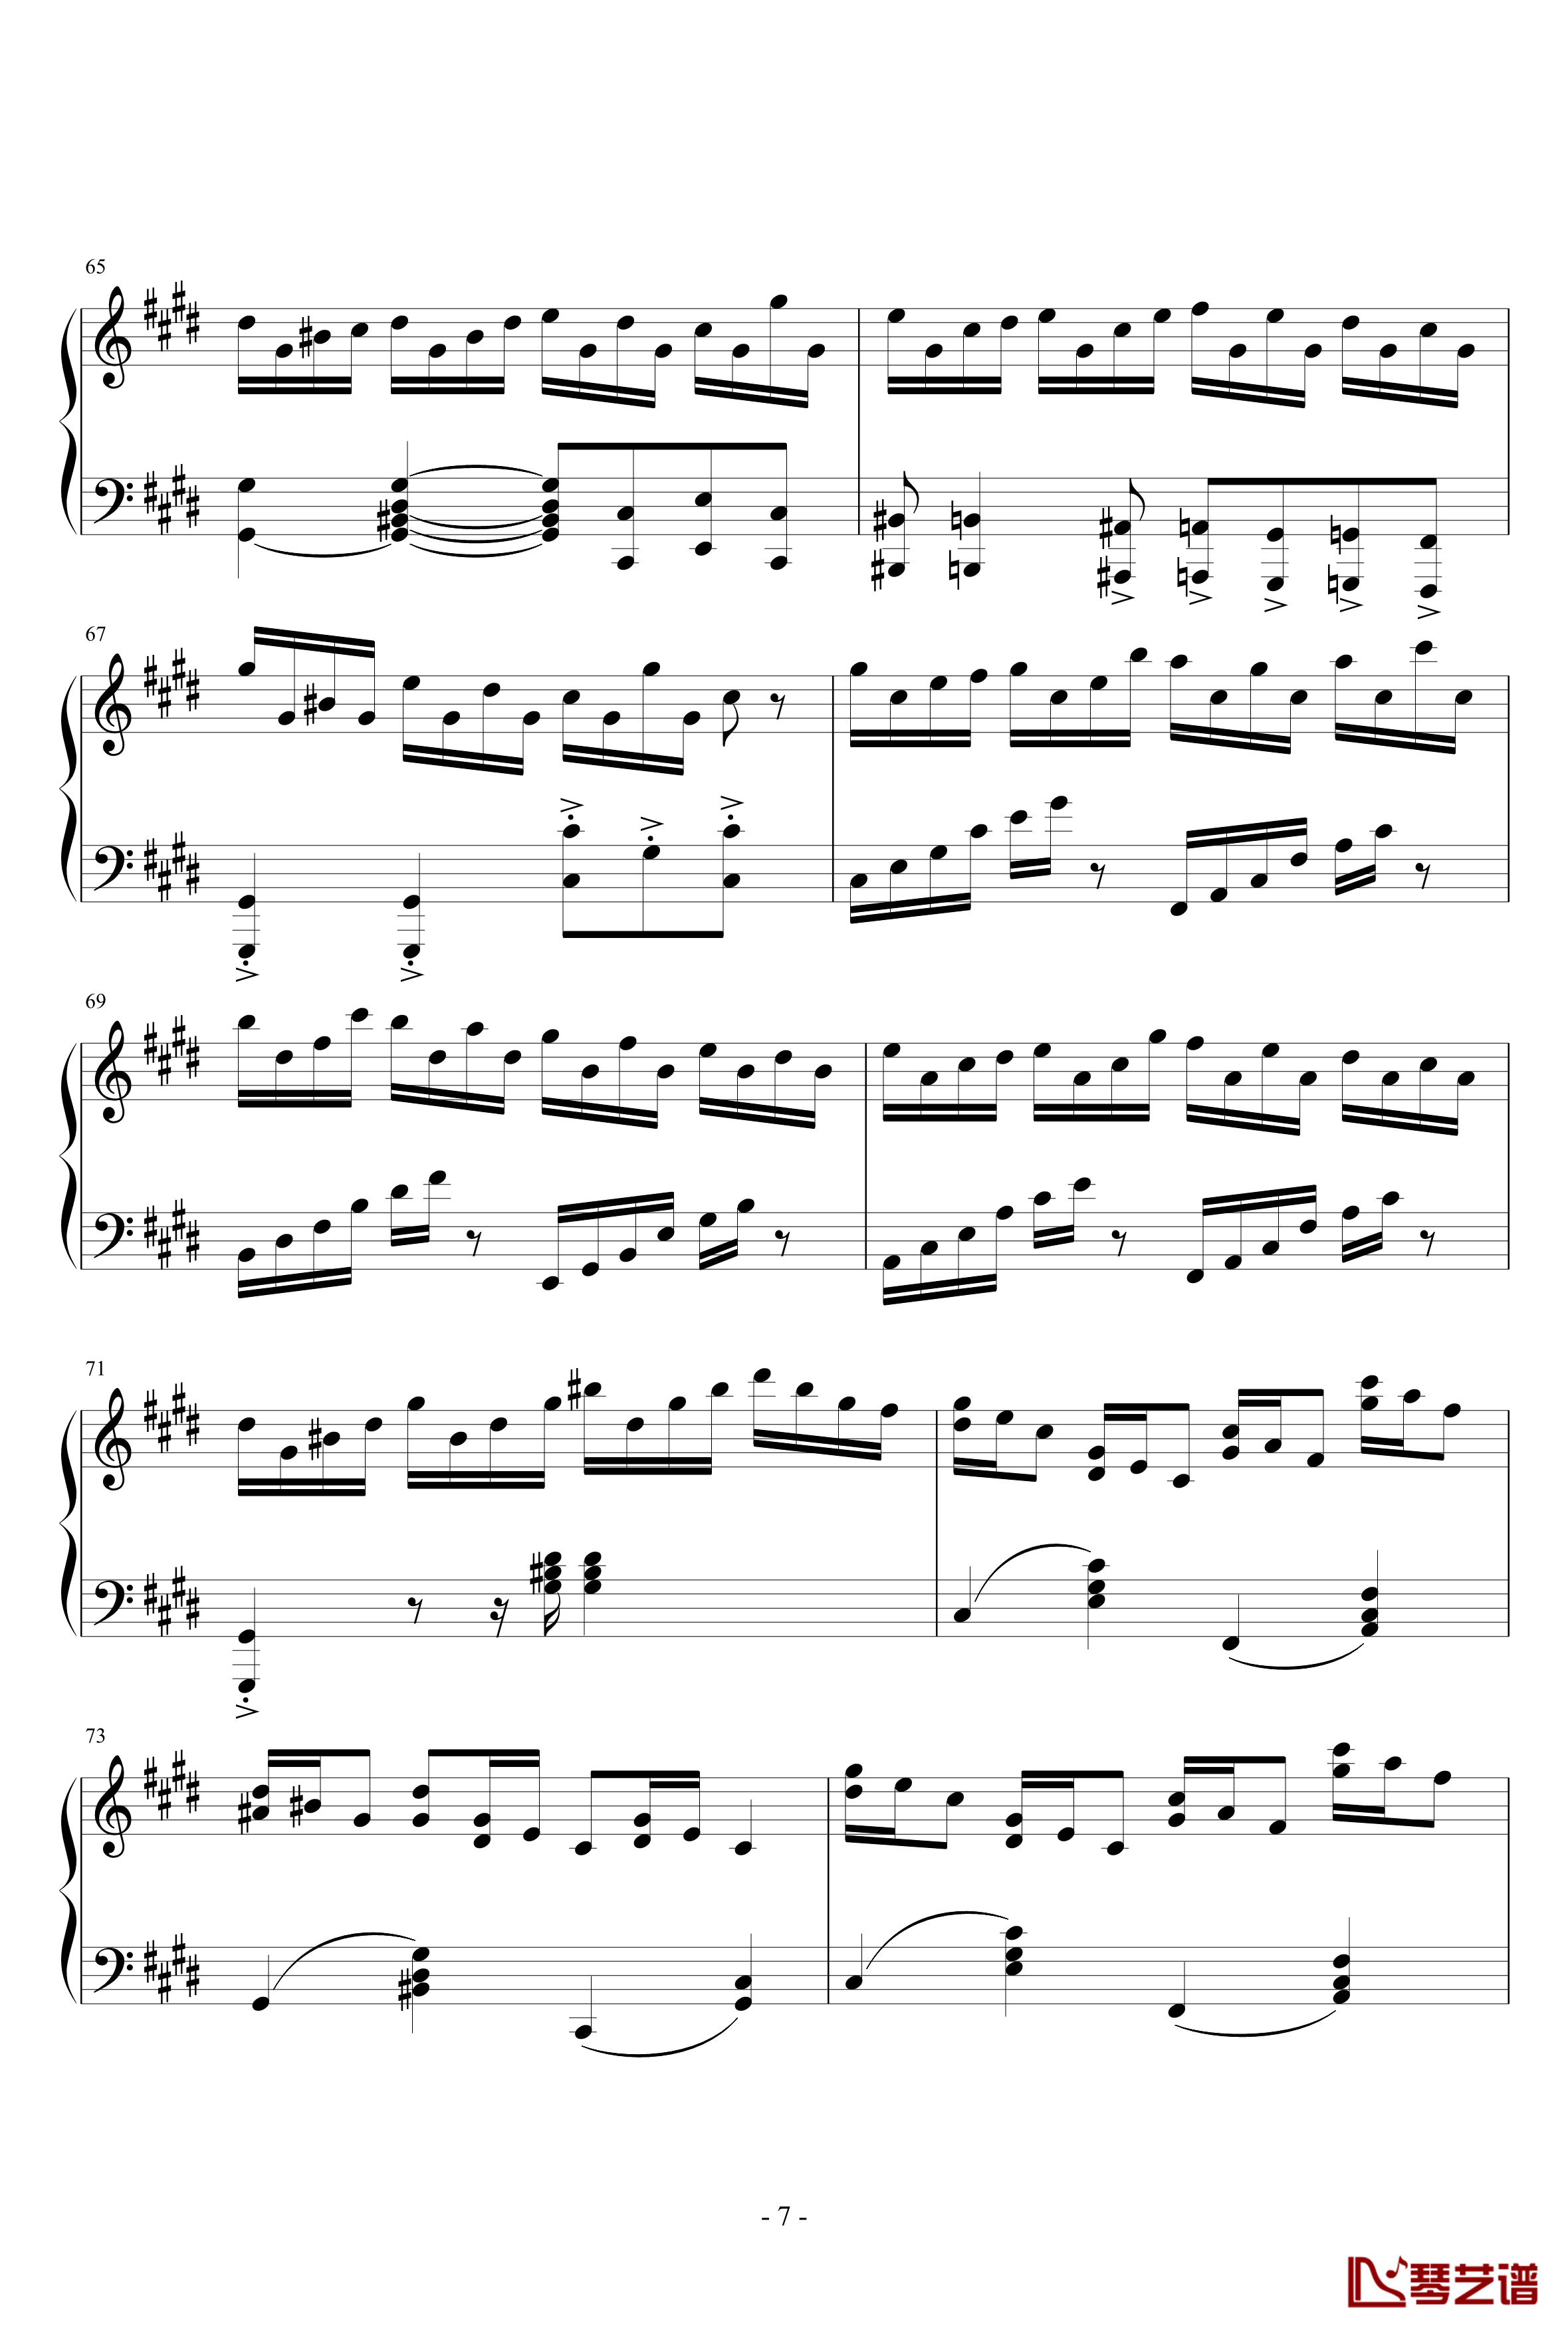 克罗地亚狂想曲钢琴谱-天津演奏会原版-马克西姆-Maksim·Mrvica7